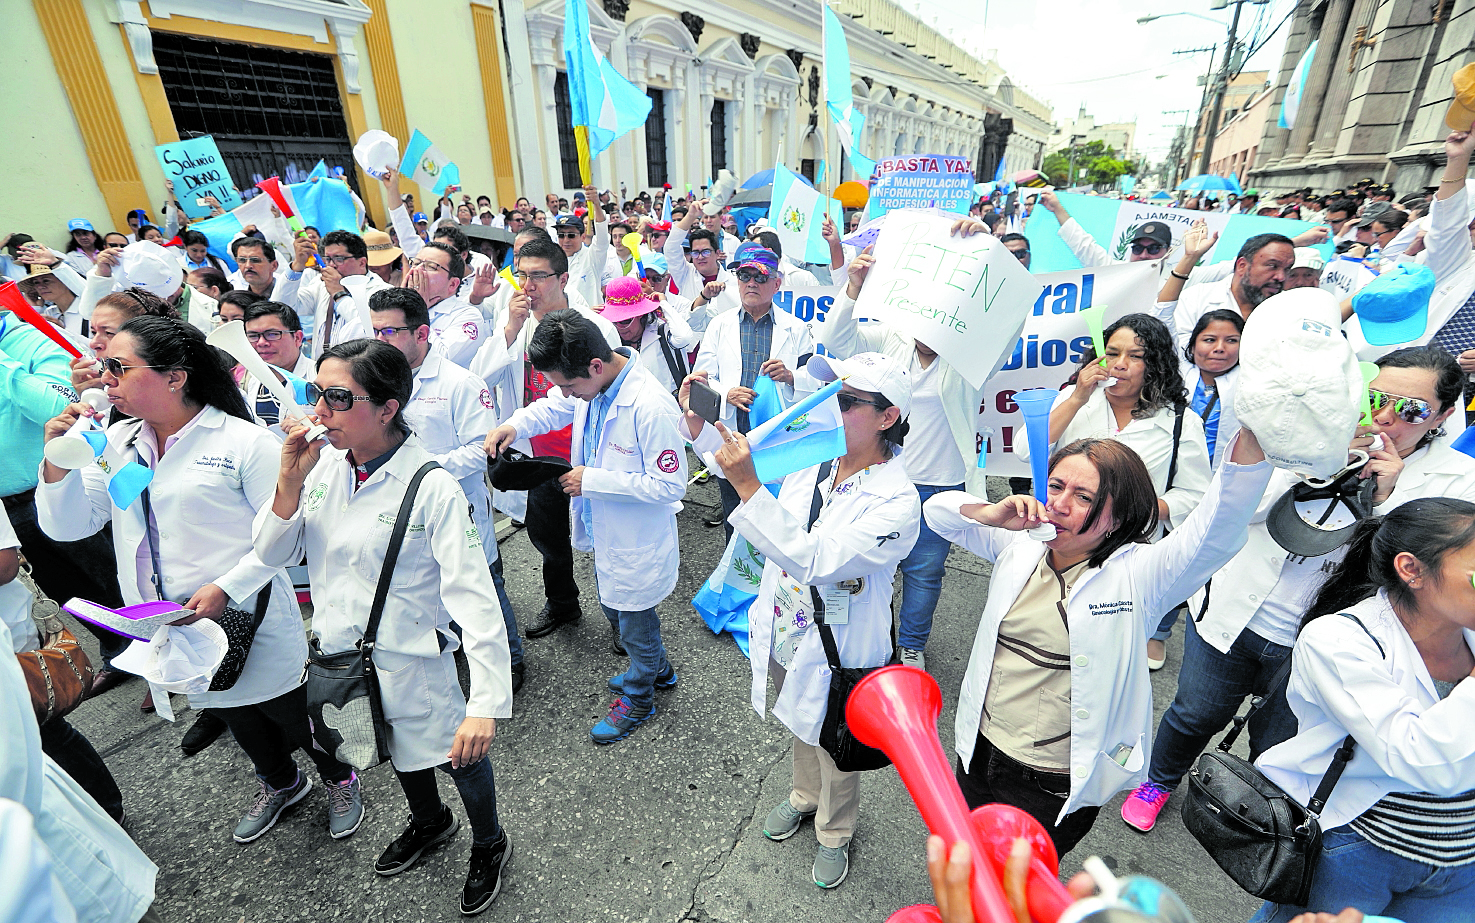 Profesionales de la salud siguen sin recibir el incremento salarial. (Foto Prensa Libre: Hemeroteca PL)